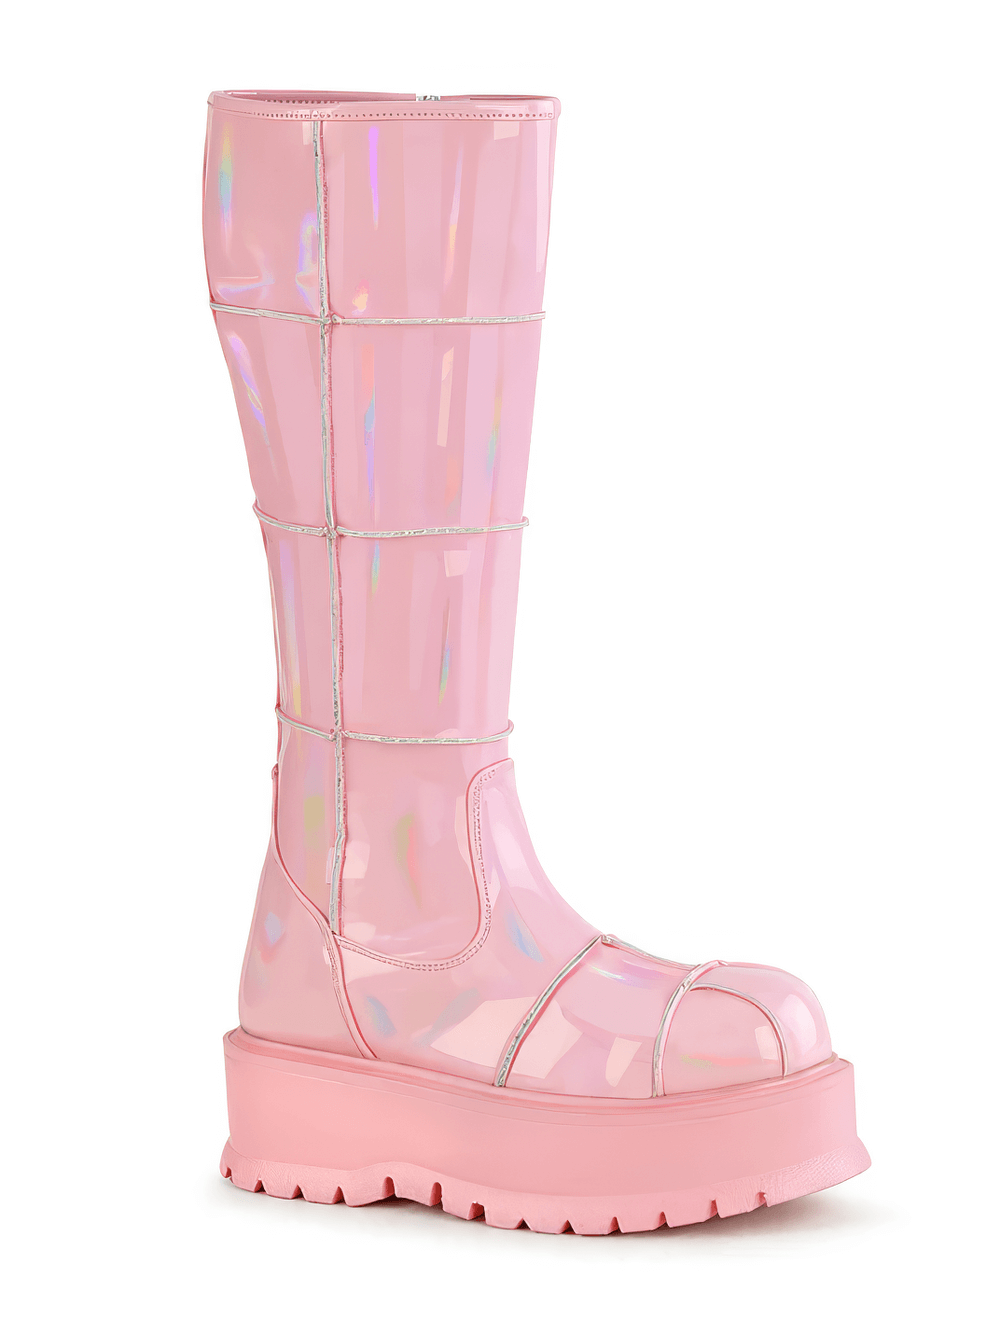 DEMONIA Pink Platform Knee-High Boots with Zip